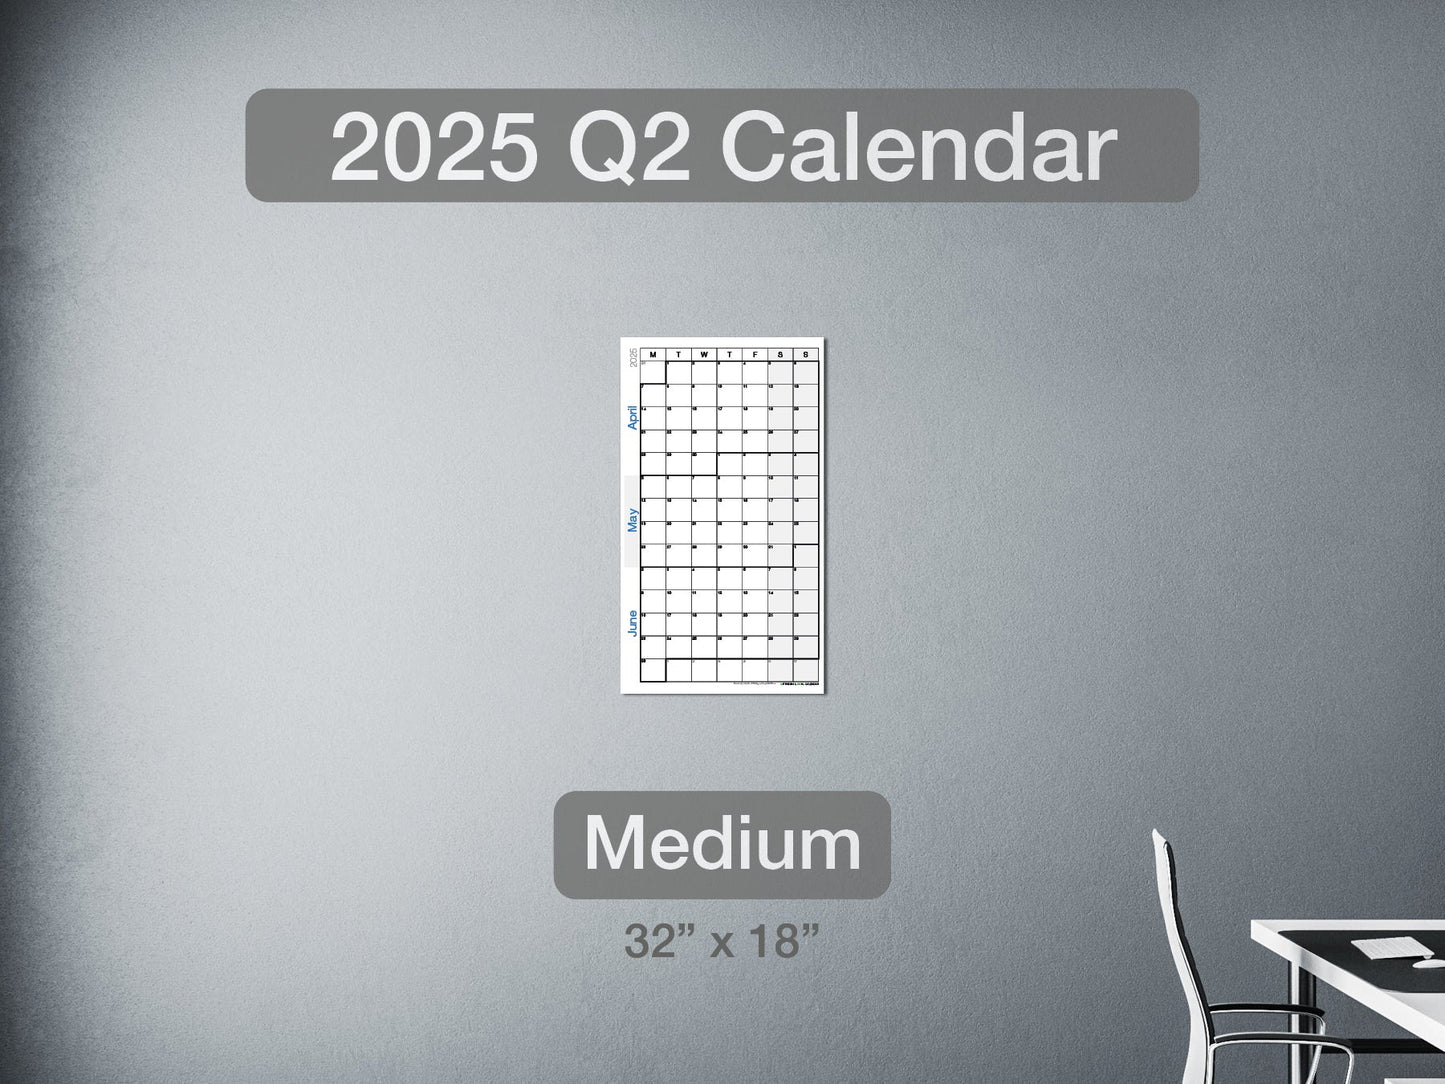 2025 Q2 Calendar Medium